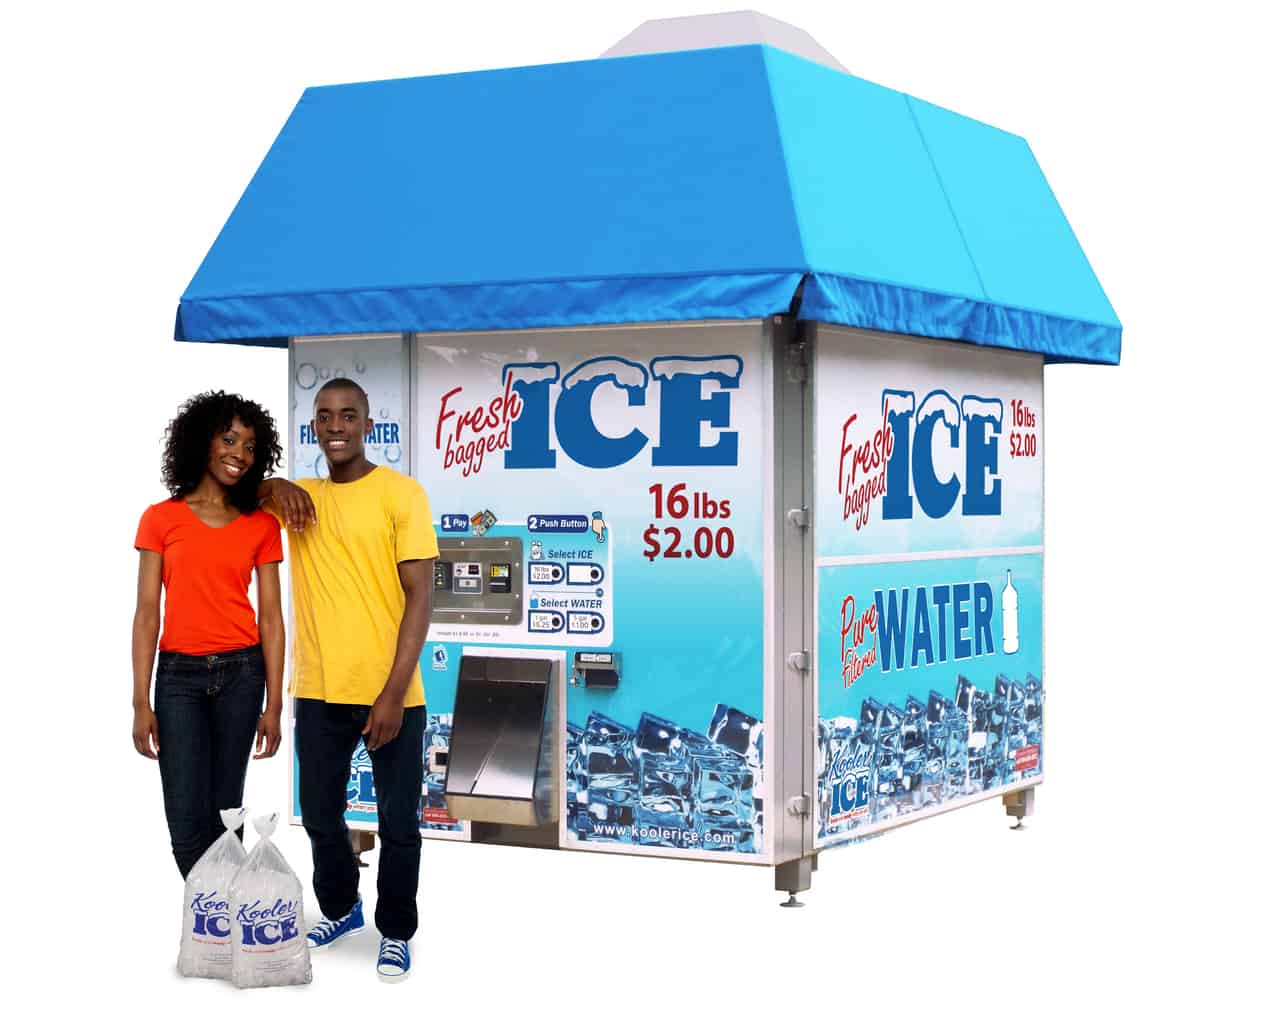 ice vending machine, ice vending, ice vending machine business, ice vending business